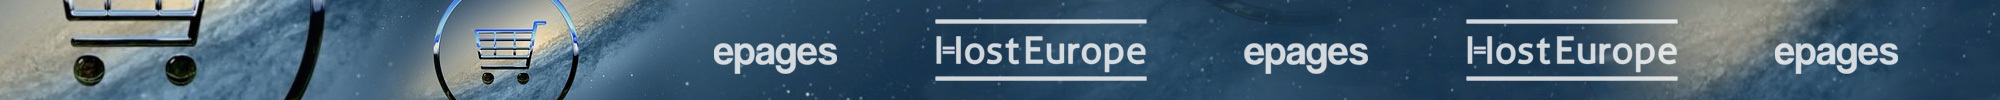 Ajuda e suporte para otimizar sua HostEurope Shop epages 6